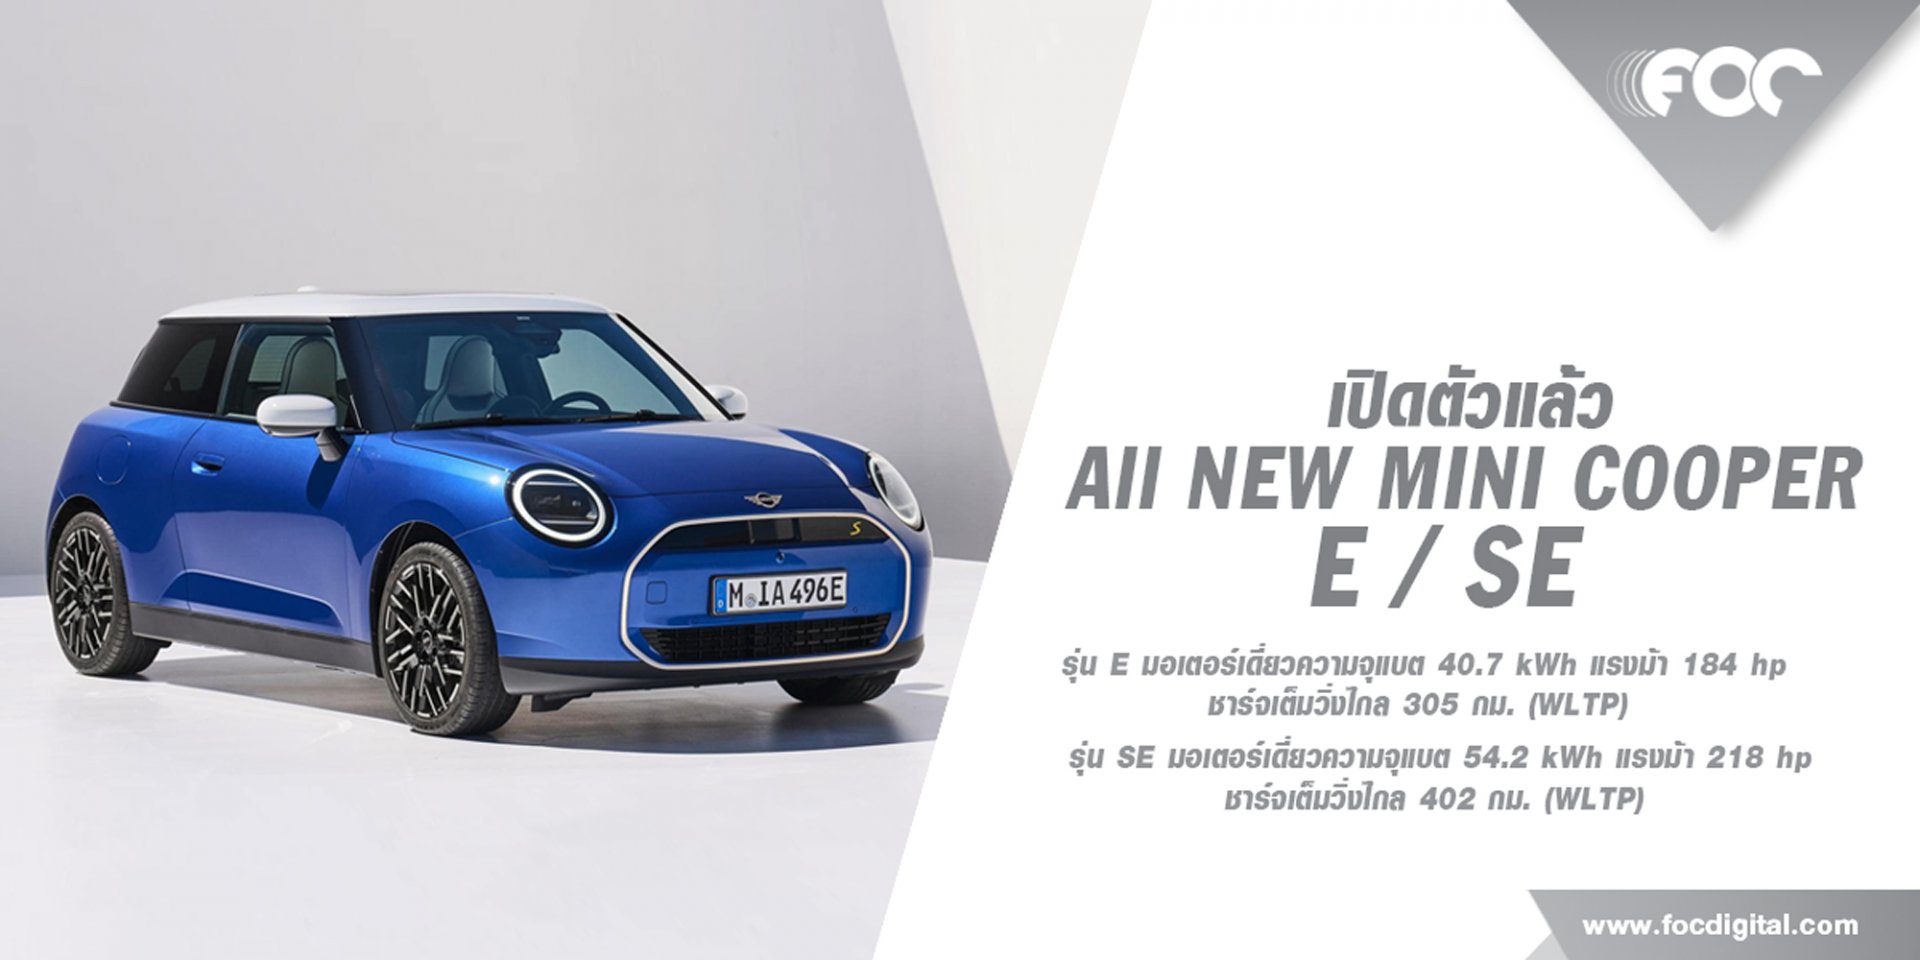 เปิดตัวแล้ว The New Mini Cooper E,SE ออกแบบใหม่หมดครั้งแรกในรอบ 10 ปี!  